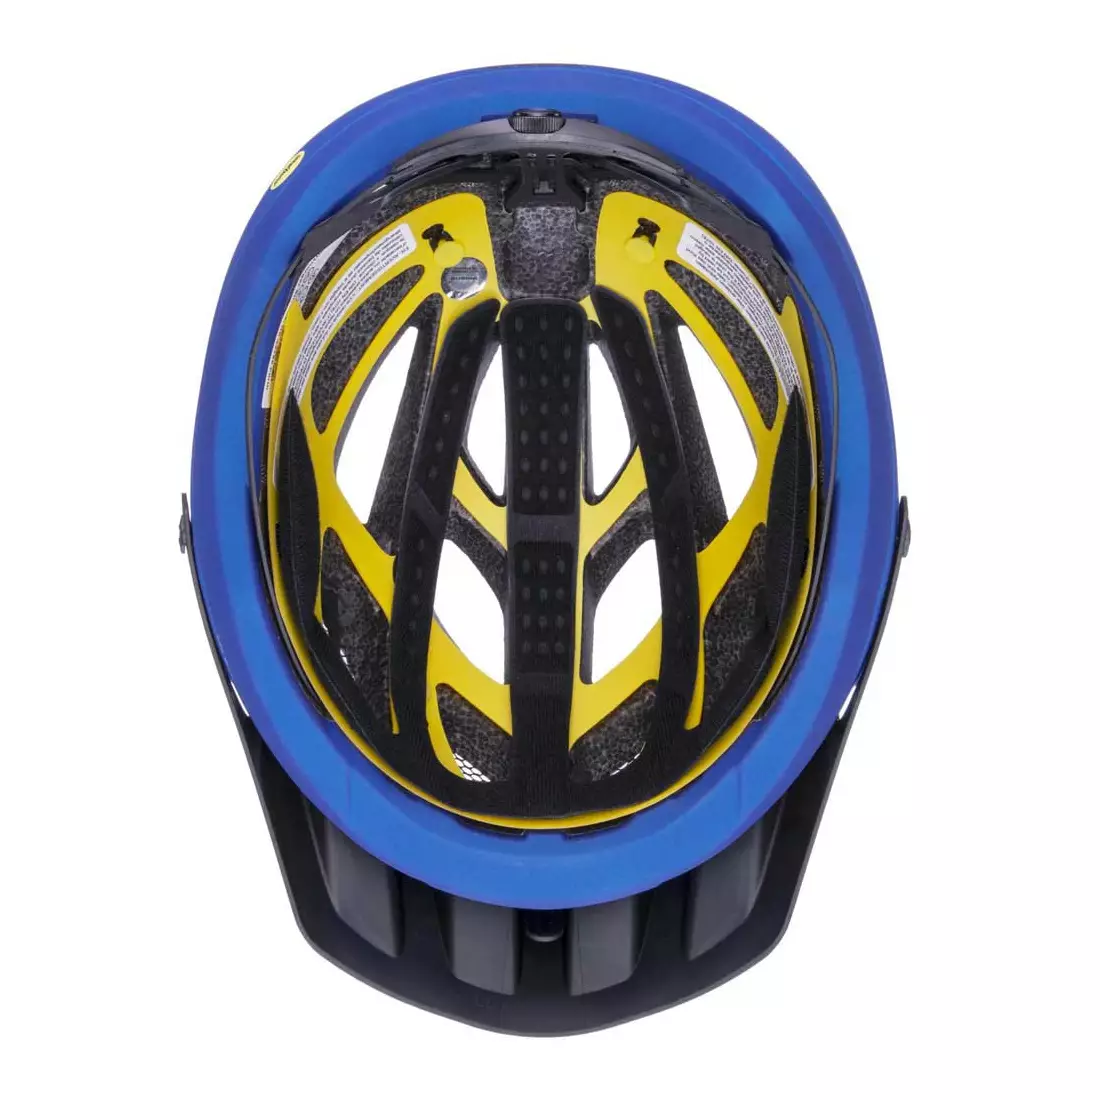 Uvex Unbound Cyklistická helma, modrý